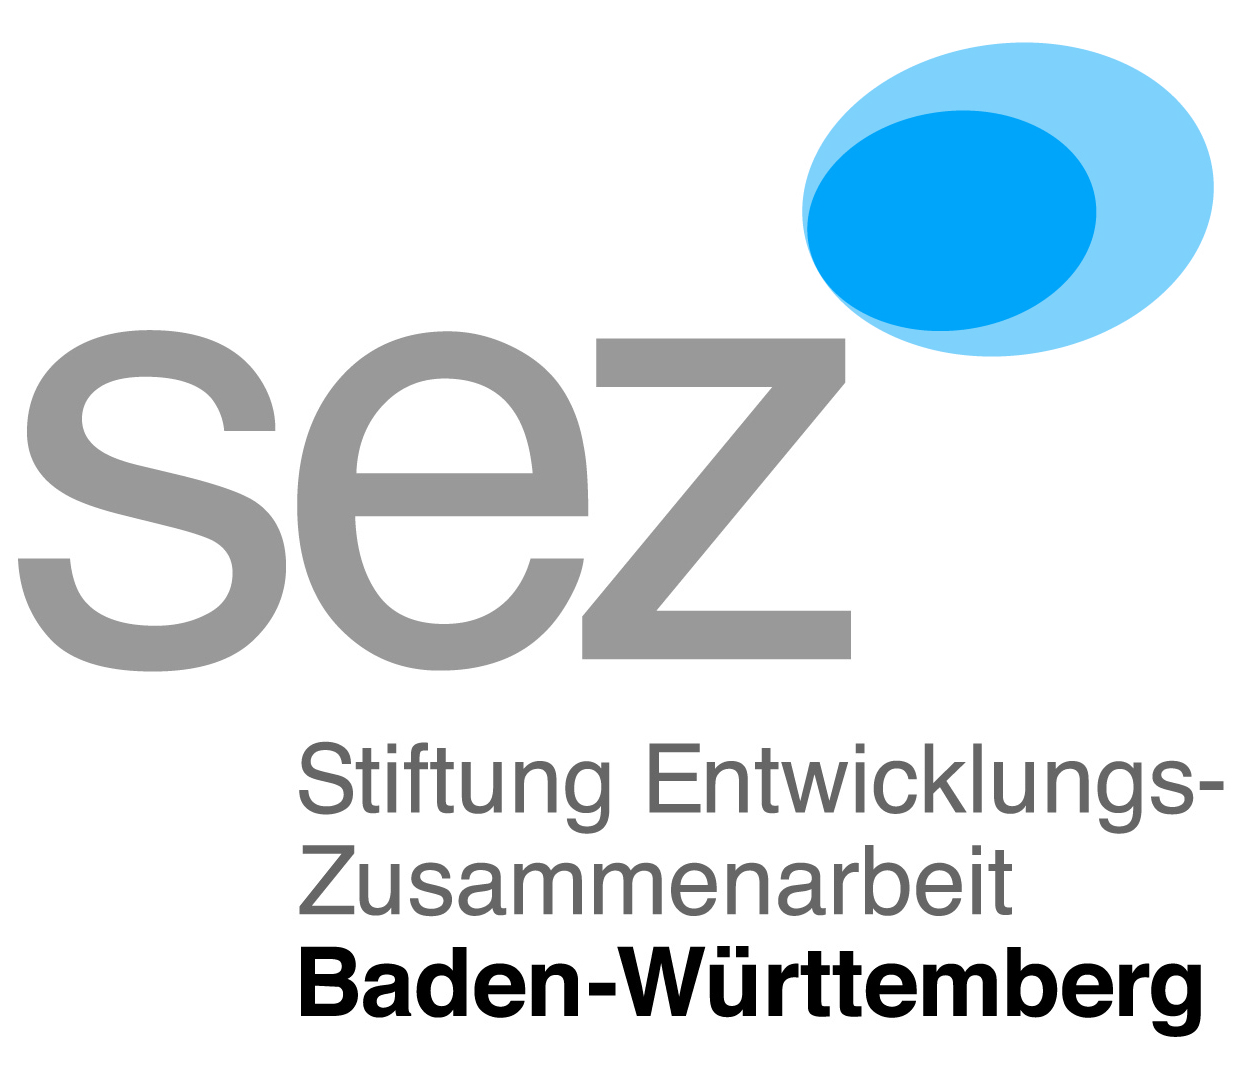 SEZ Logo